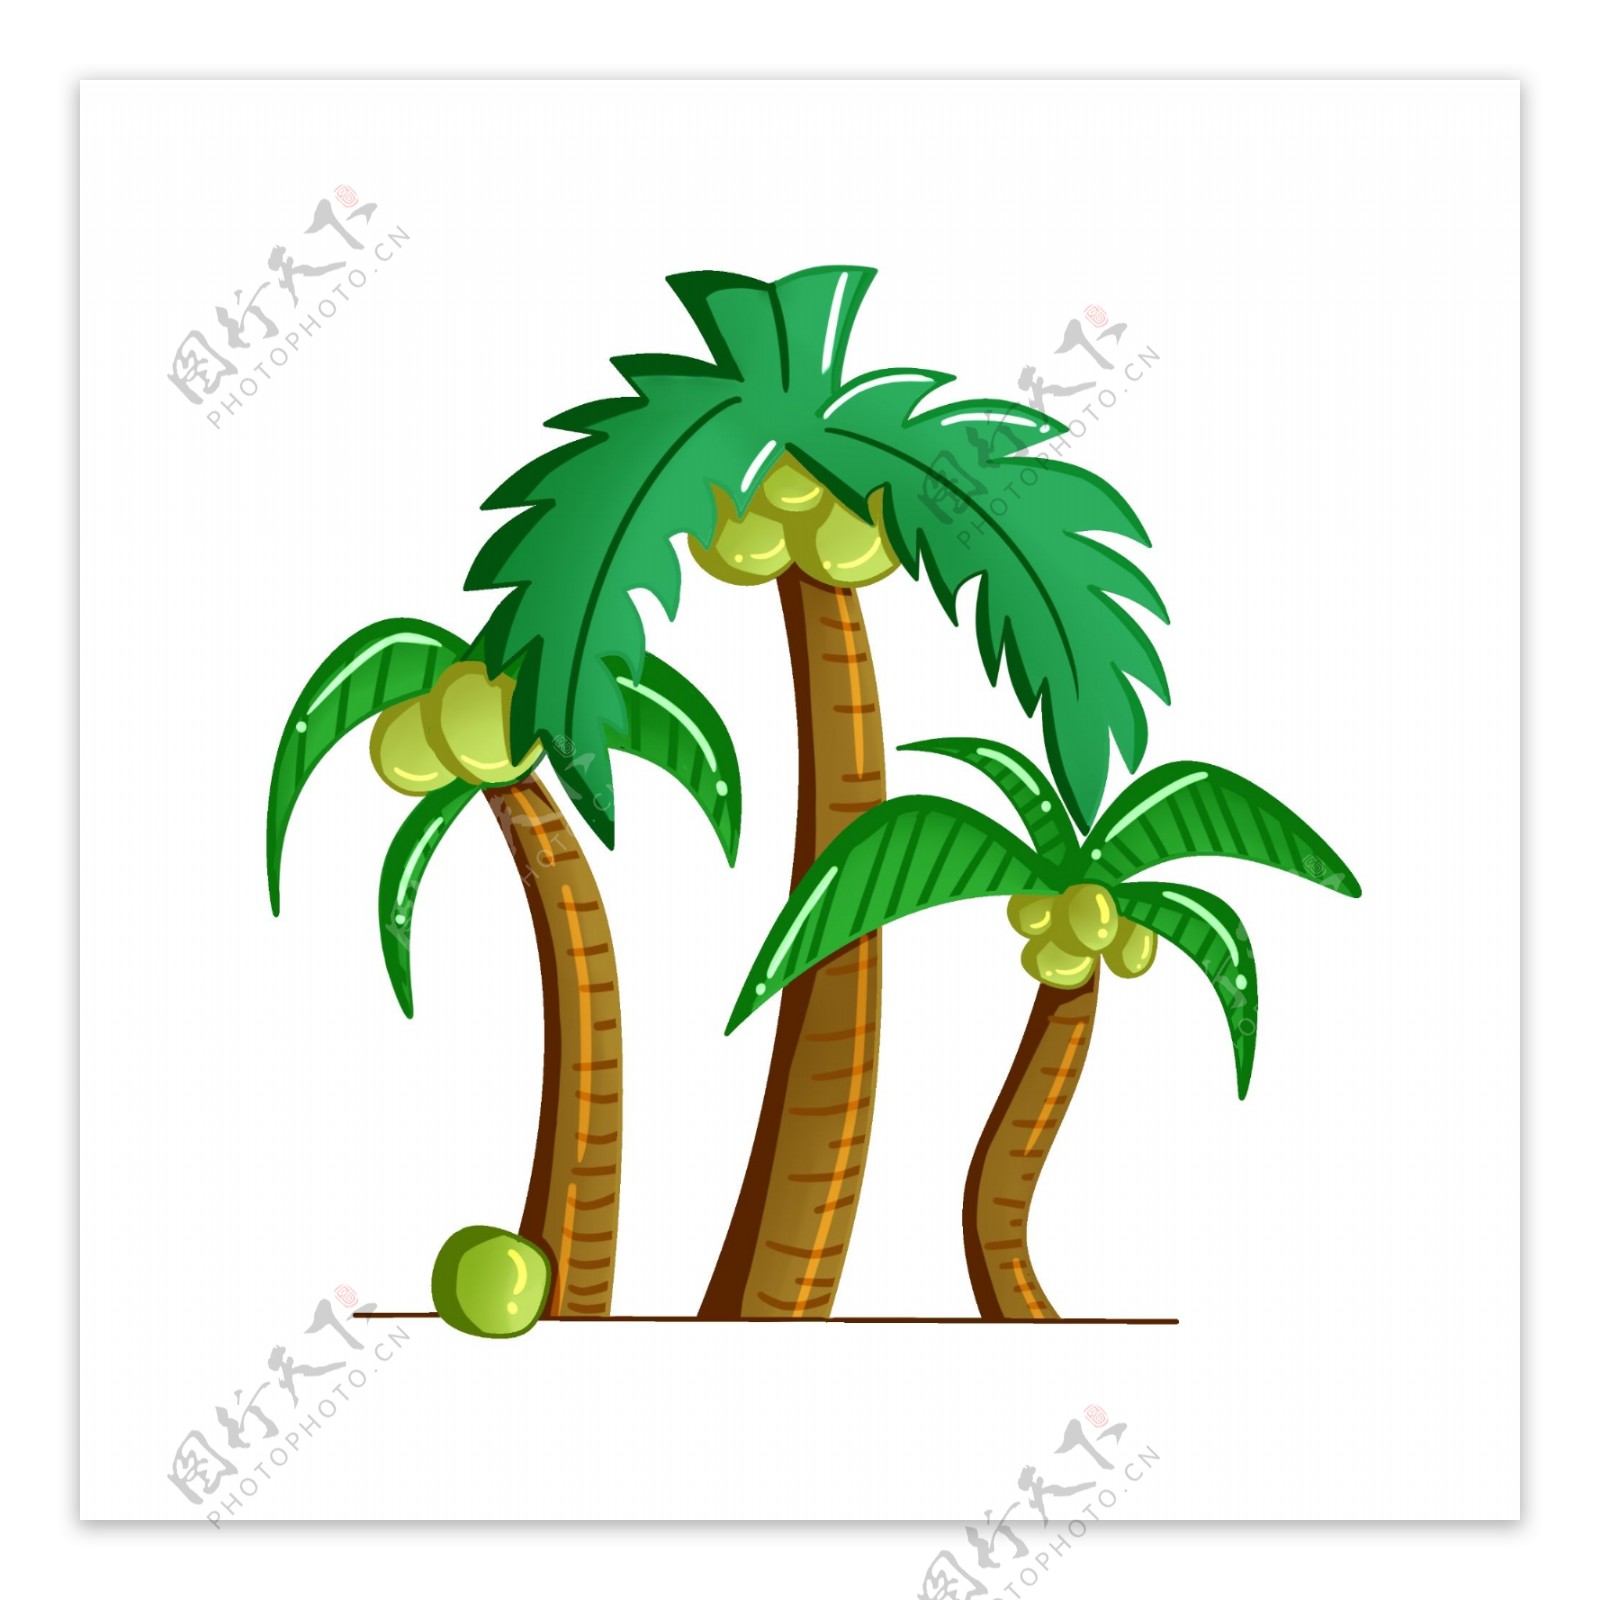 立体椰子树图案